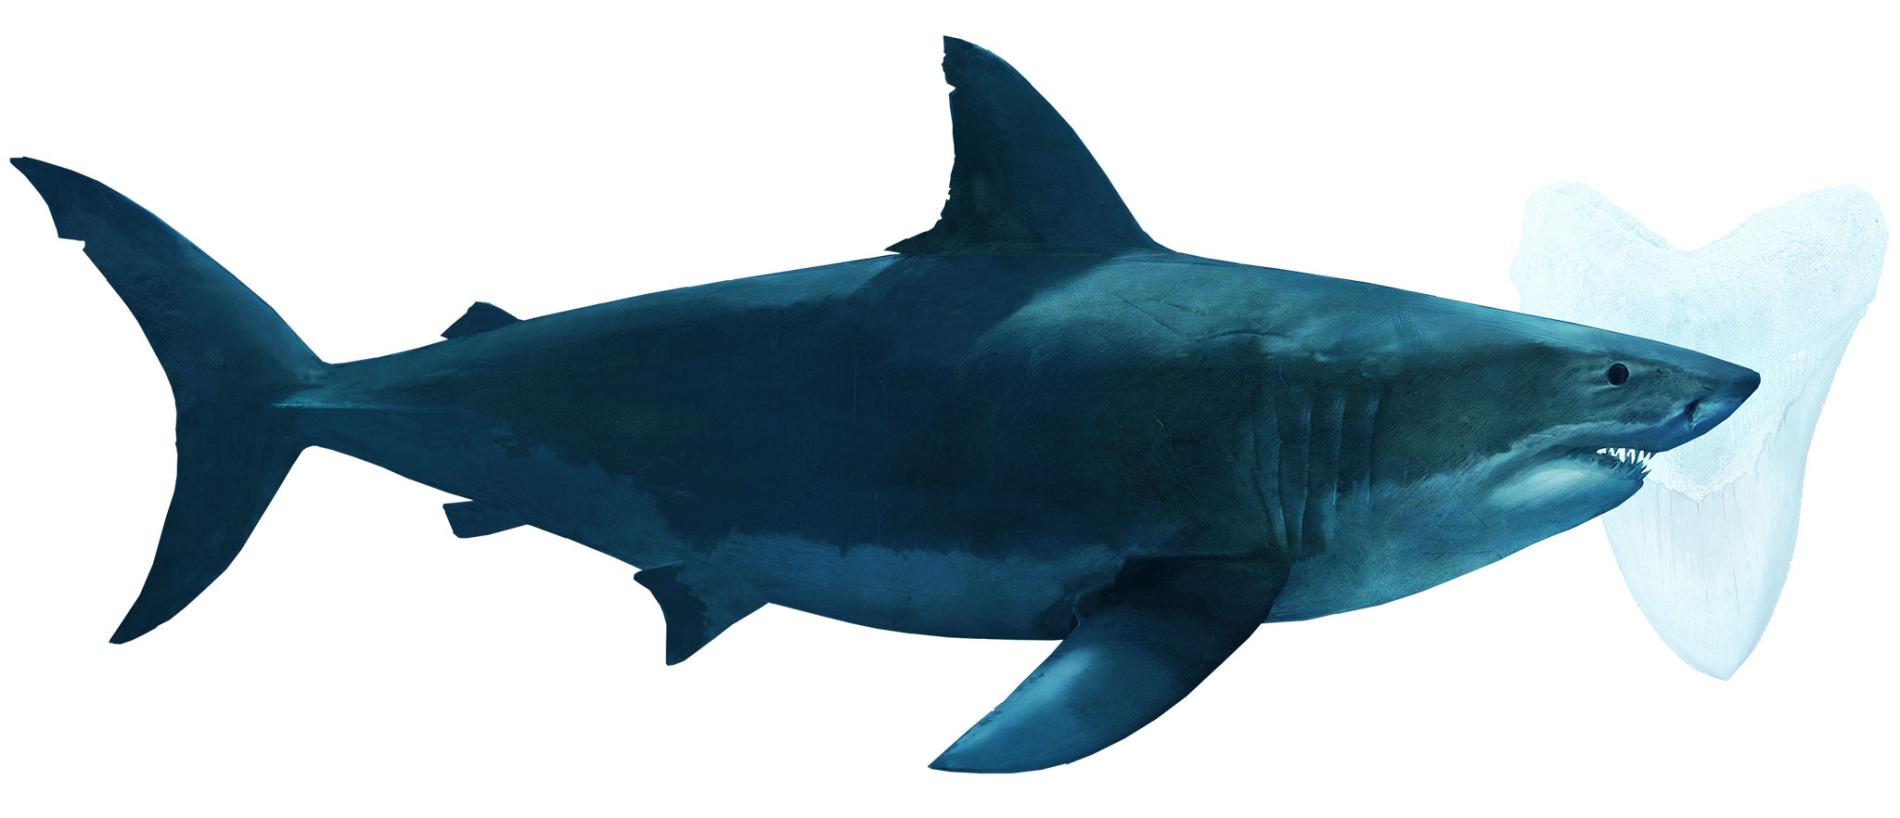 巨齒鯊確定是滅絕了──要怪的可能就是大白鯊- 國家地理雜誌中文網